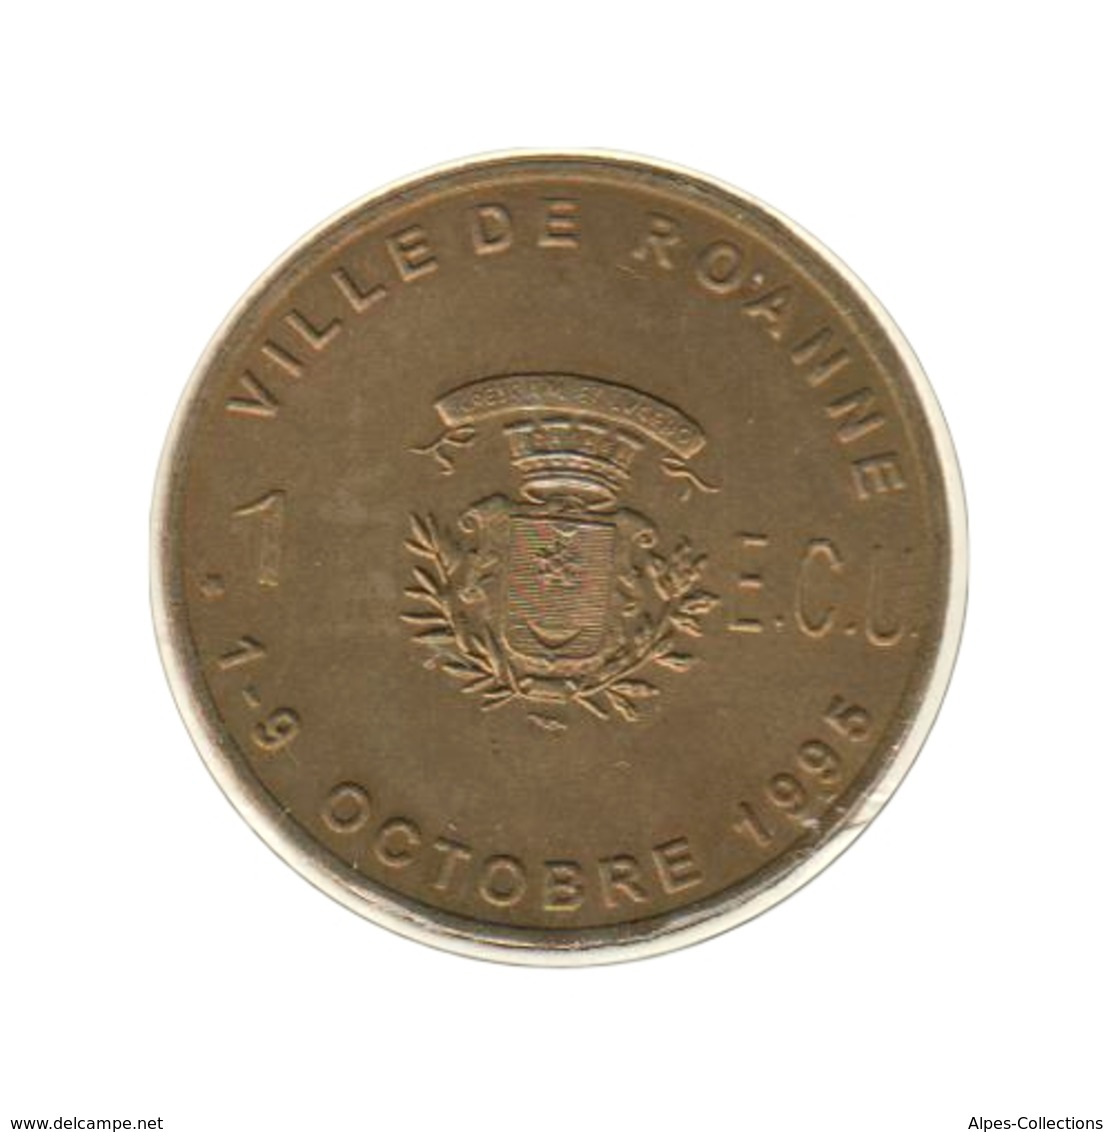 ROANNE - EC0010.1 - 1 ECU DES VILLES - Réf: T86 - 1995 - Euros Of The Cities